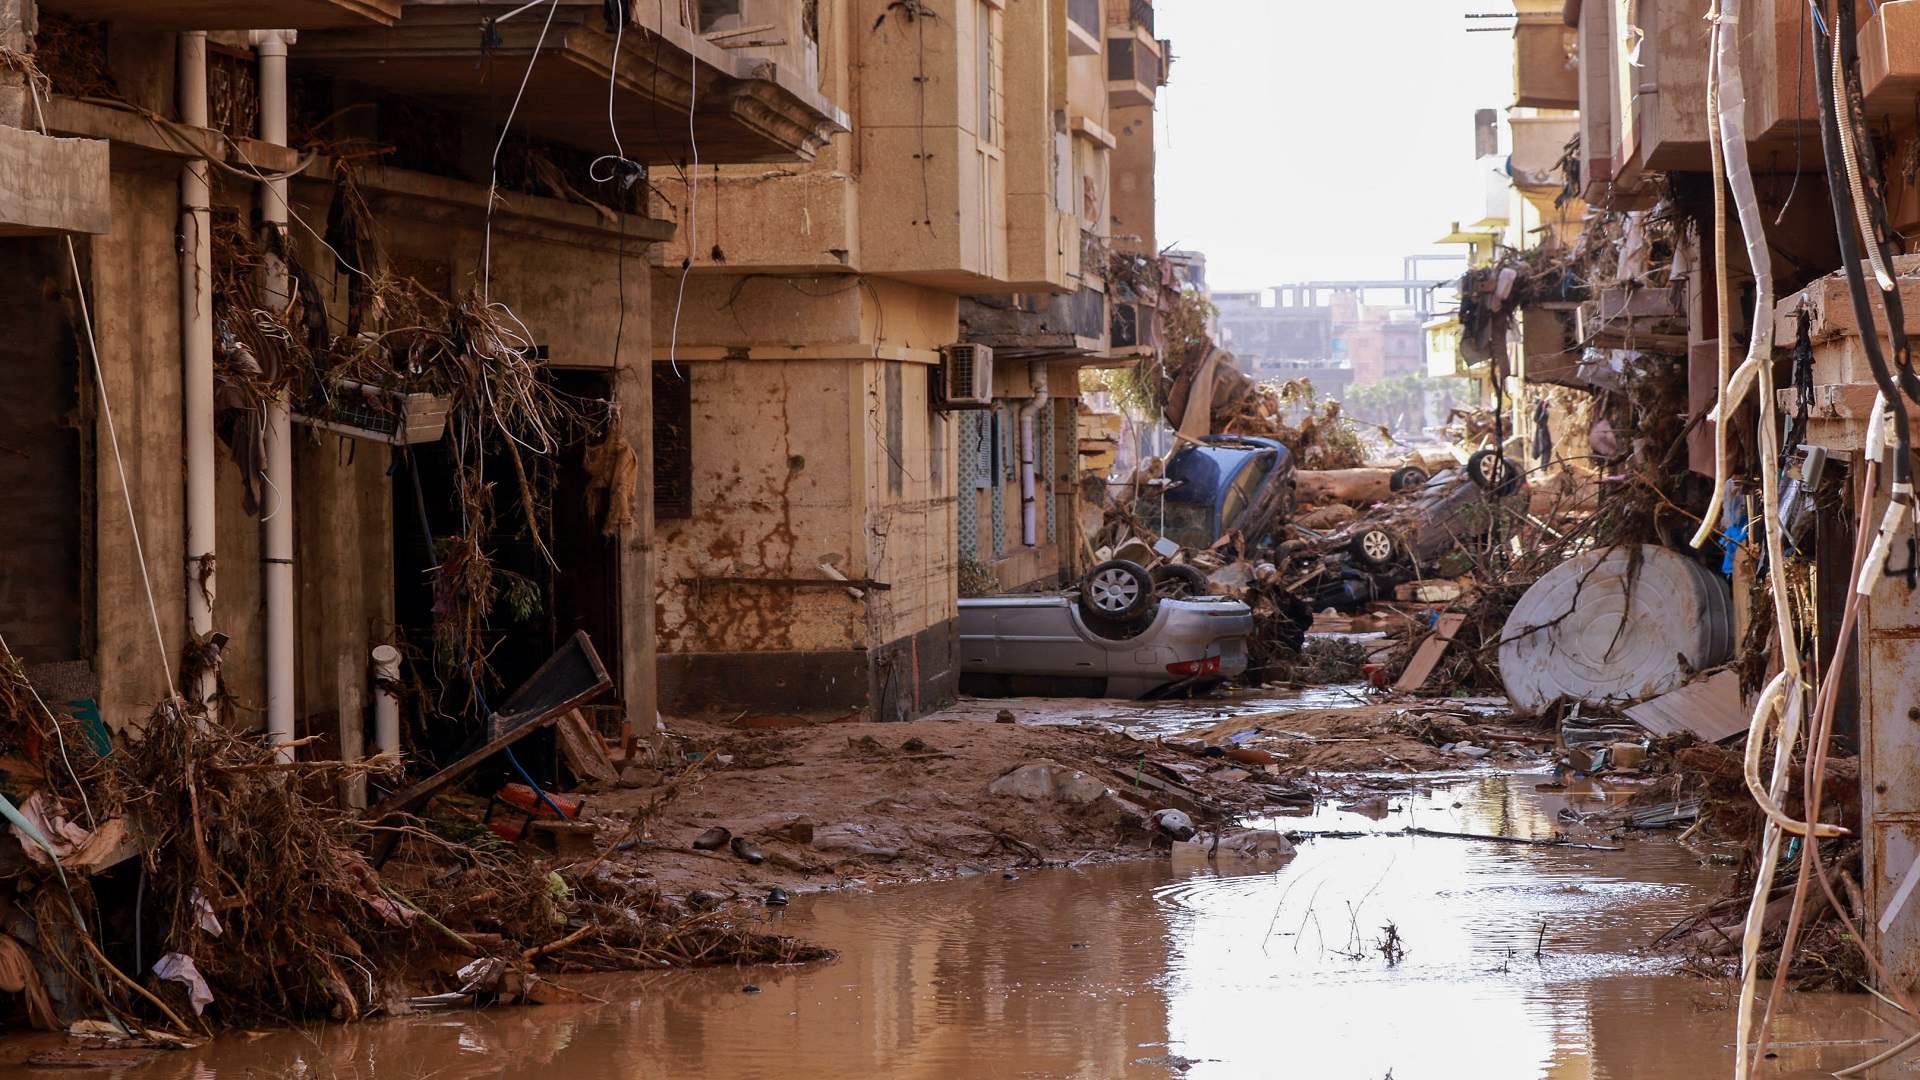 أكثر من 2300 قتيل في الفيضانات في درنة بشرق ليبيا